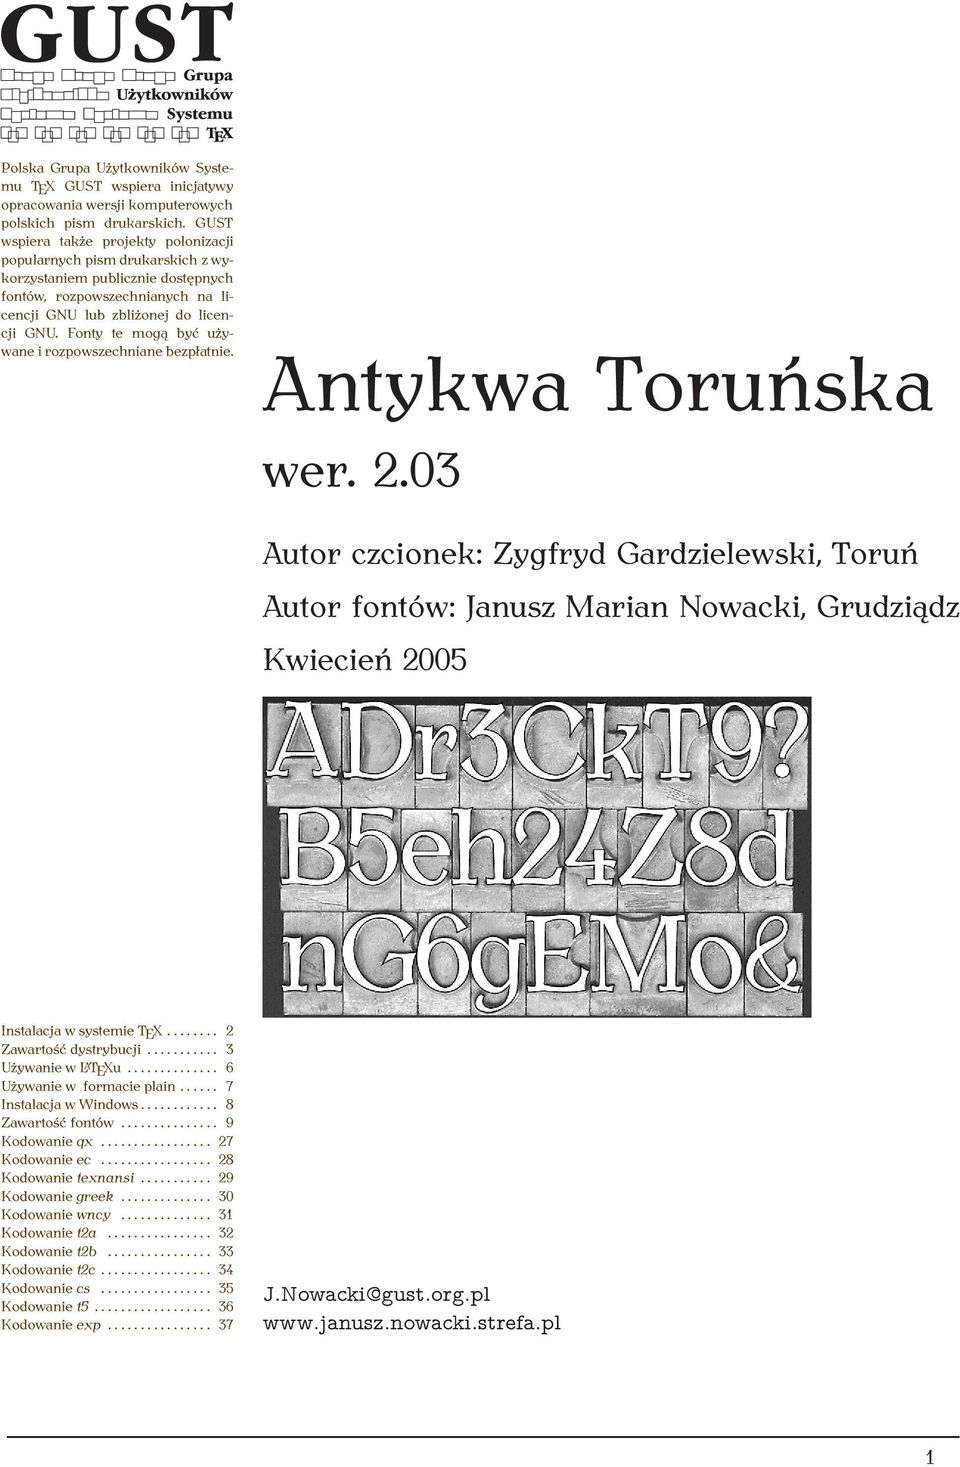 Fonty te mogą być używane i rozpowszechniane bezpłatnie. Antykwa Toruńska wer. 2.